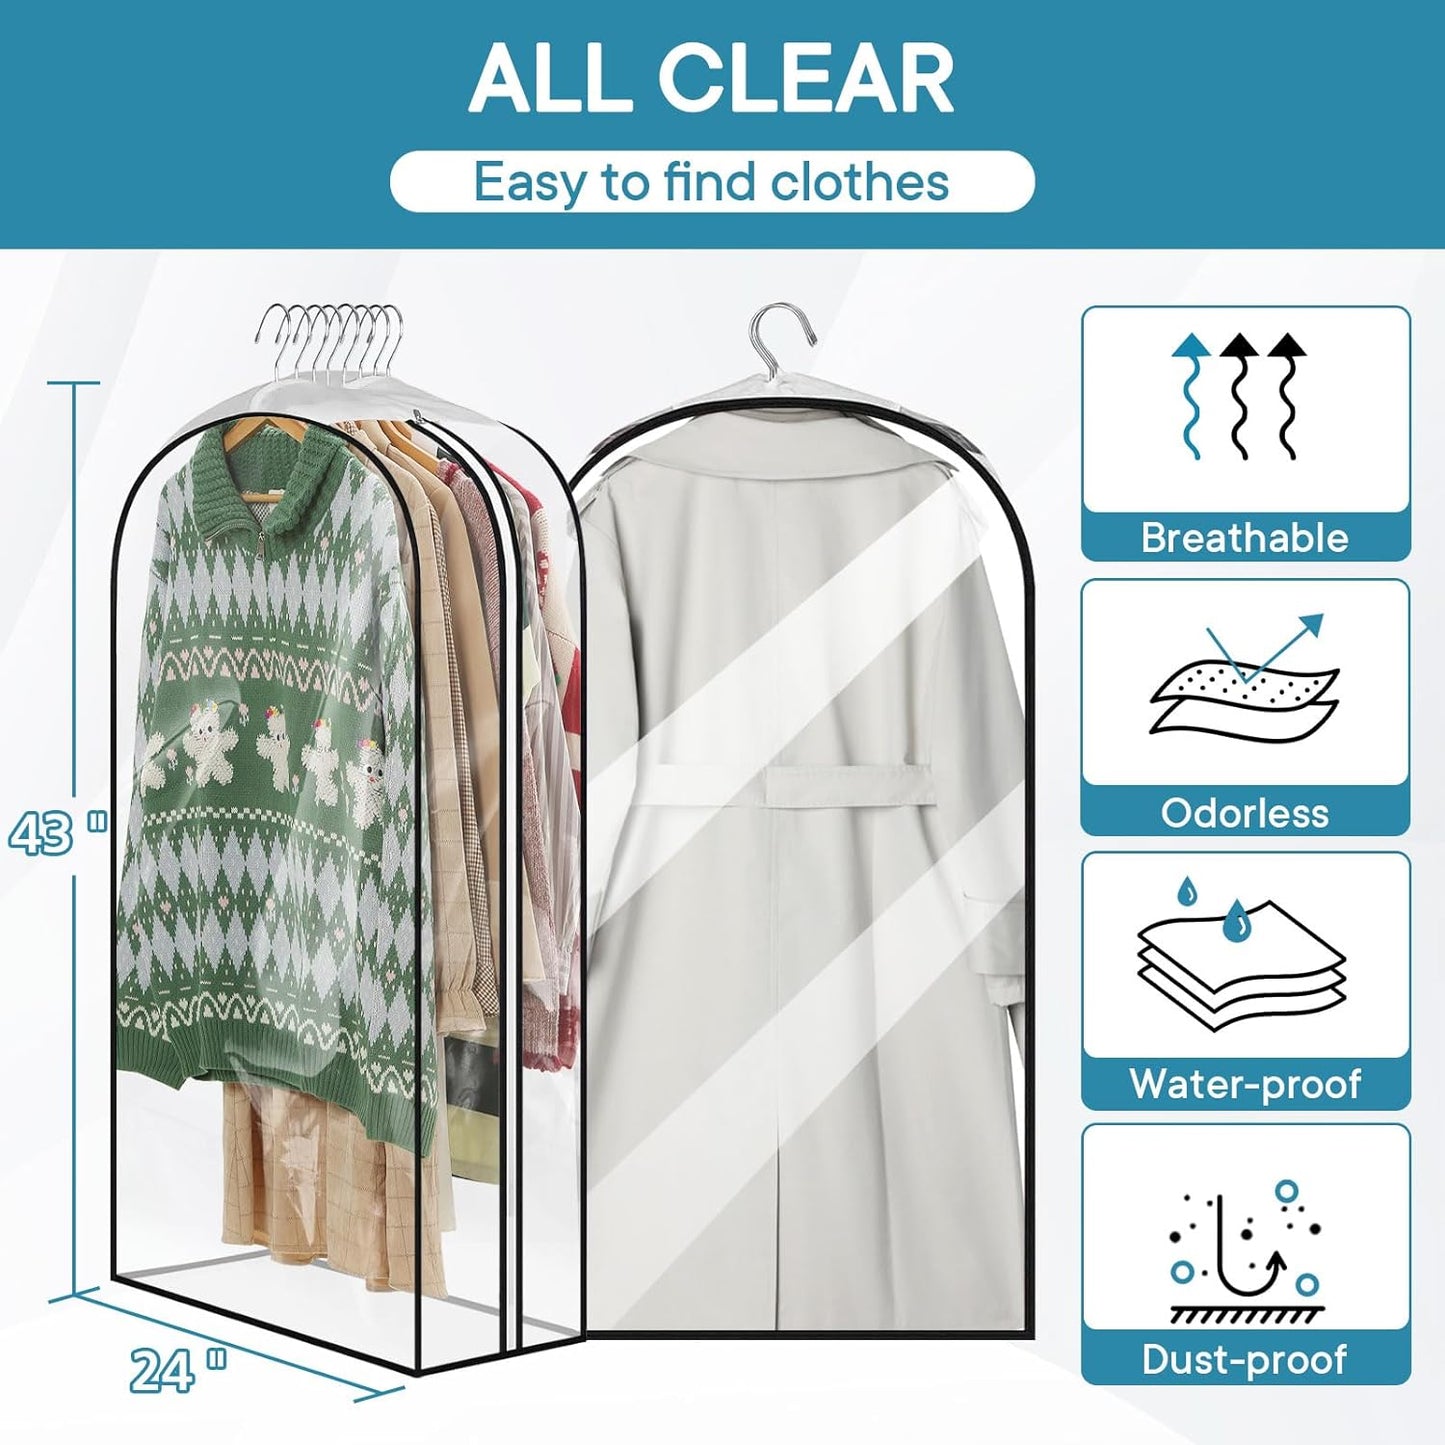 All Clear Garment Bag